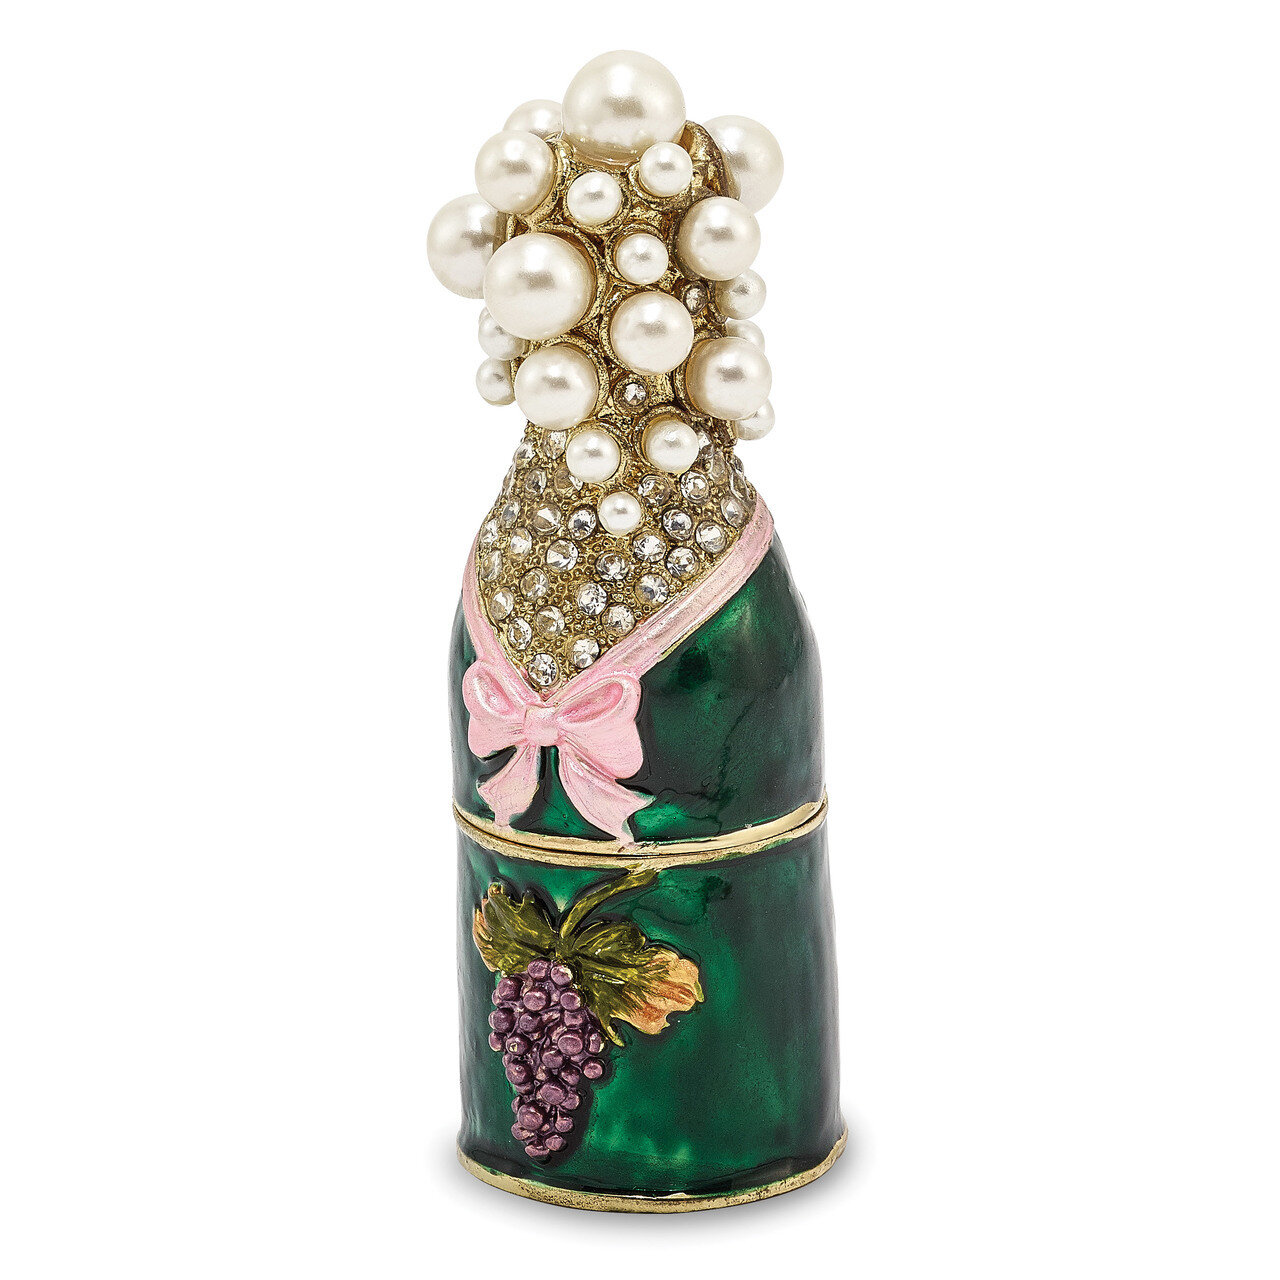 Champagne Bottle Trinket Box Enamel on Pewter by Jere